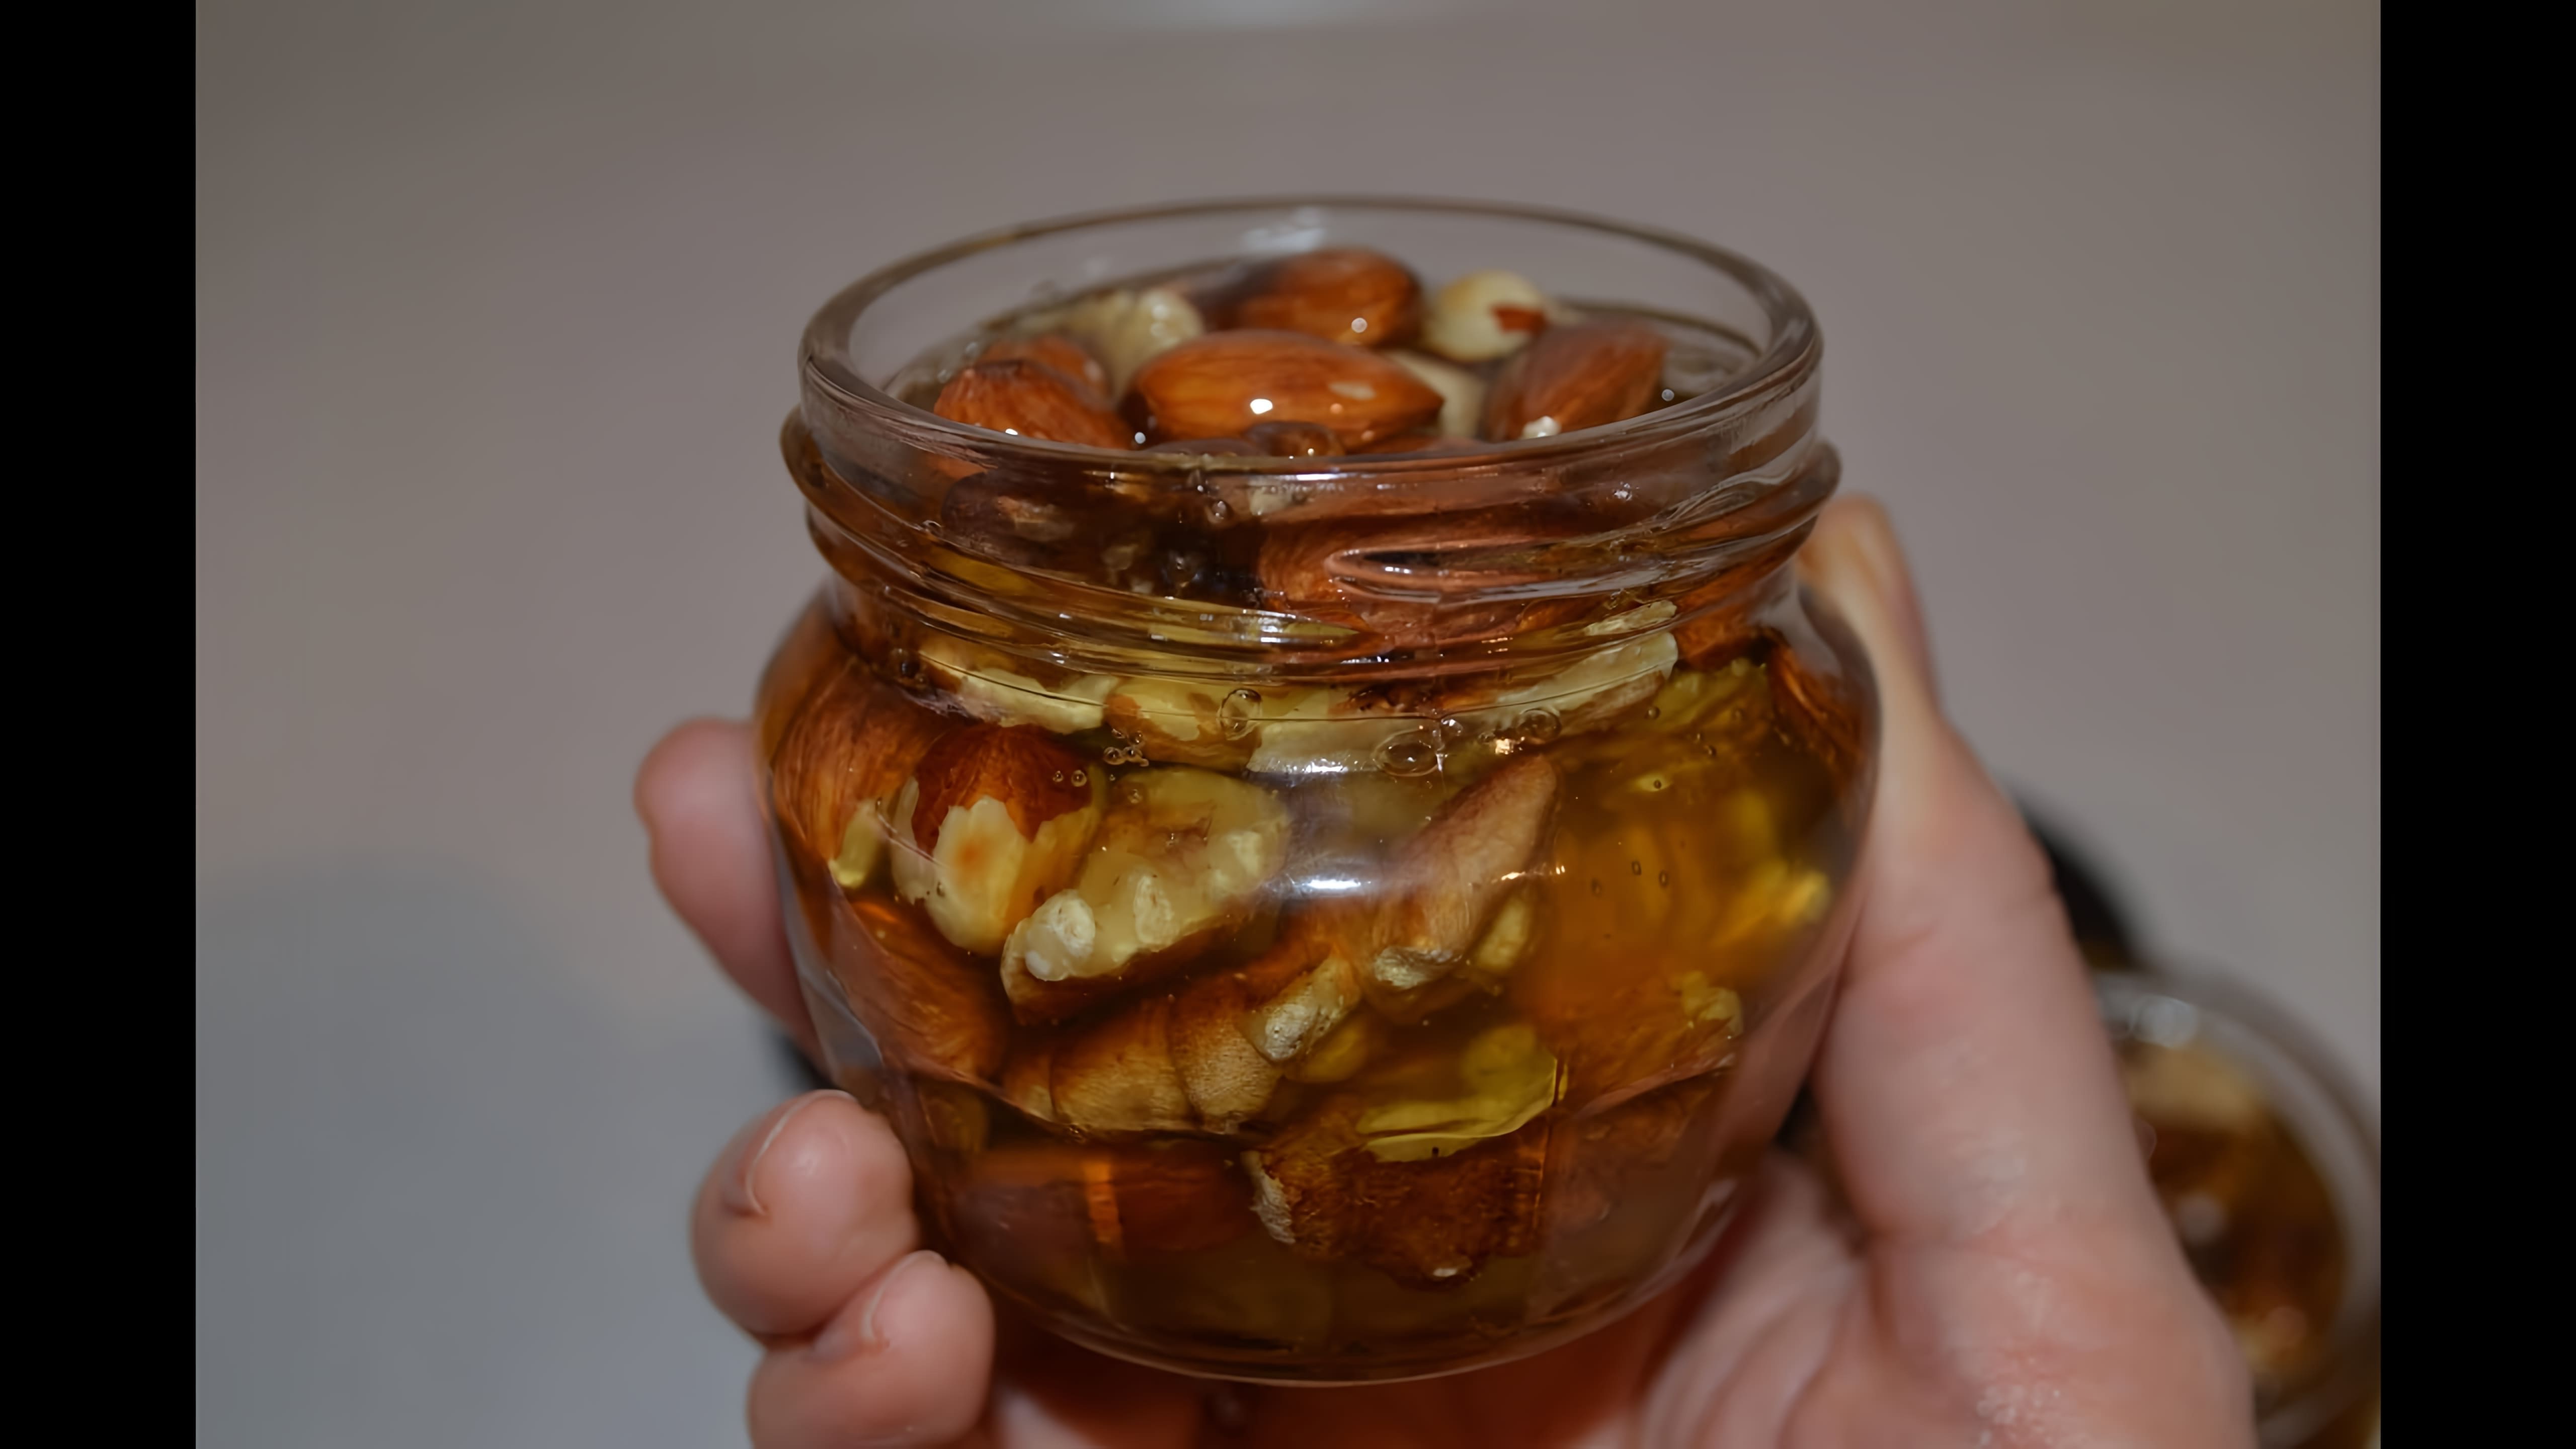 В этом видео демонстрируется процесс приготовления полезного и вкусного лакомства из орехов в меду